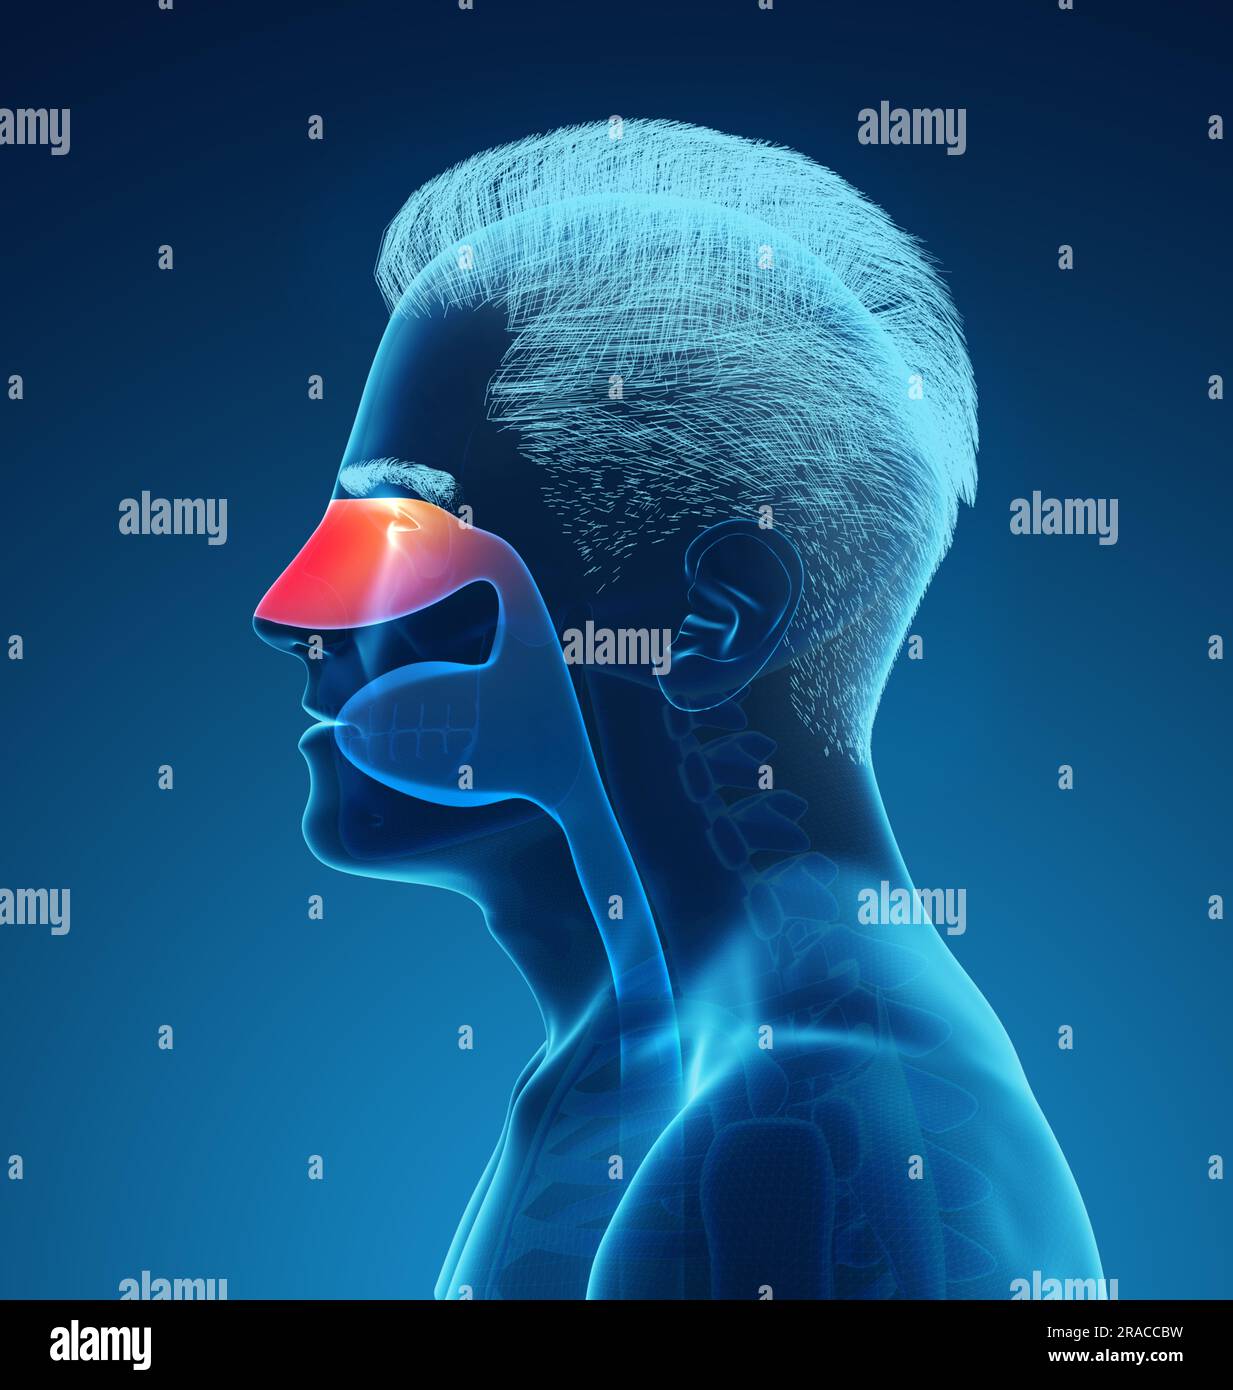 Image radiographique de l'homme montrant le système respiratoire avec la cavité nasale sur fond bleu, illustration Banque D'Images